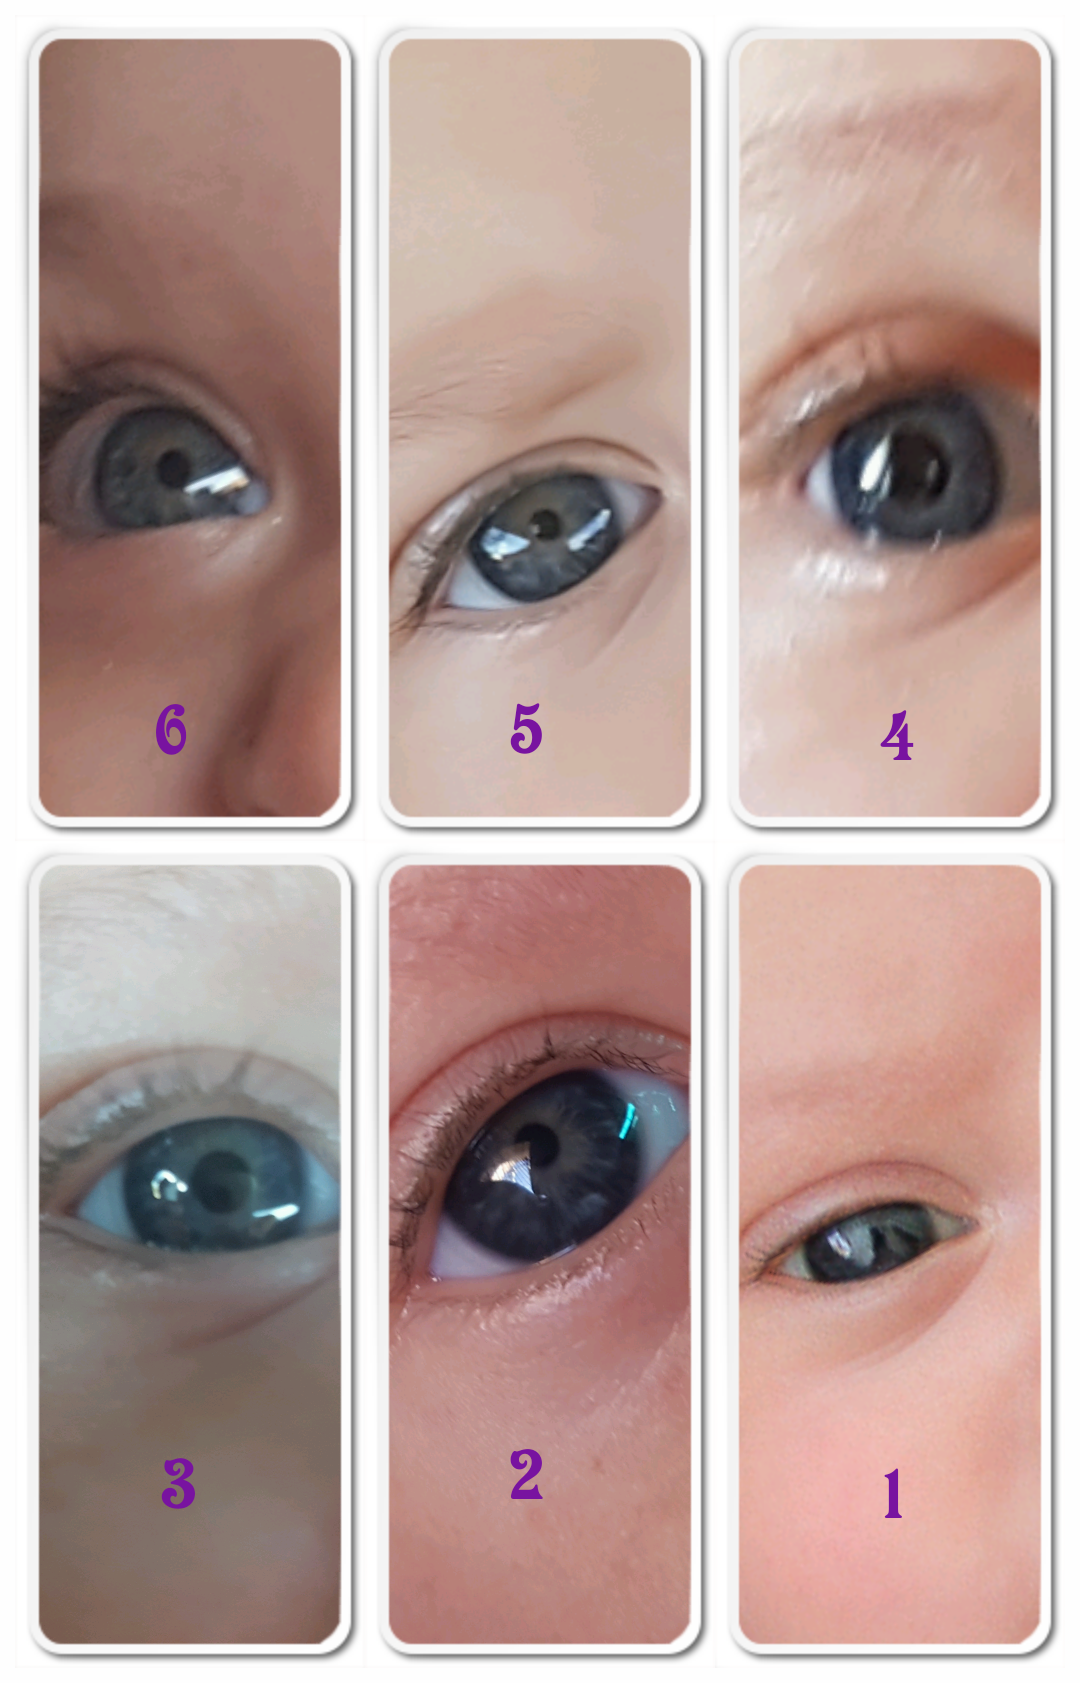 Цвет глаз у новорожденных: от чего зависит и когда меняется